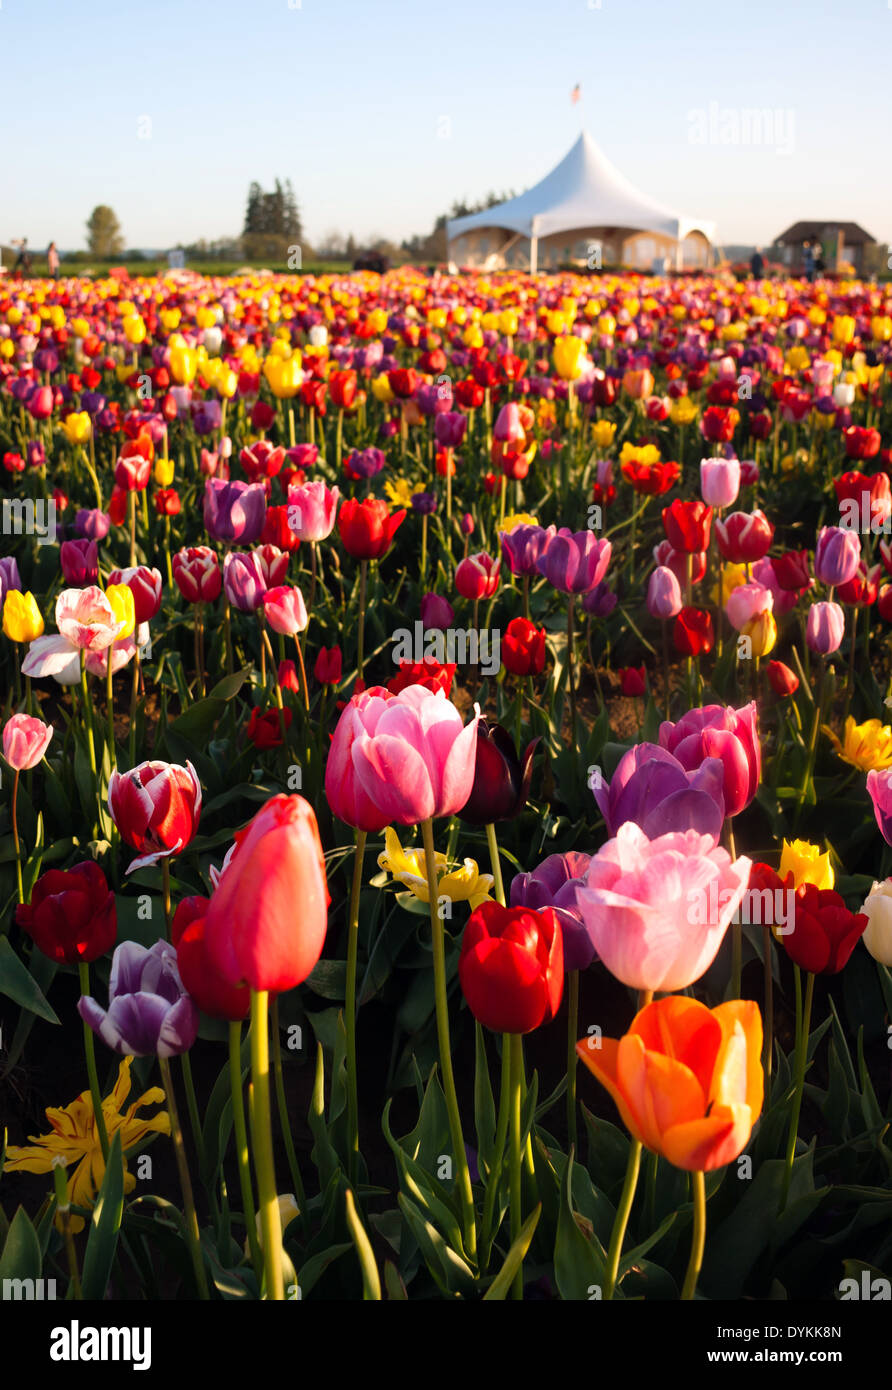 Vertikale Zusammensetzung eines großen Feldes voller Tulpen erntereif Stockfoto